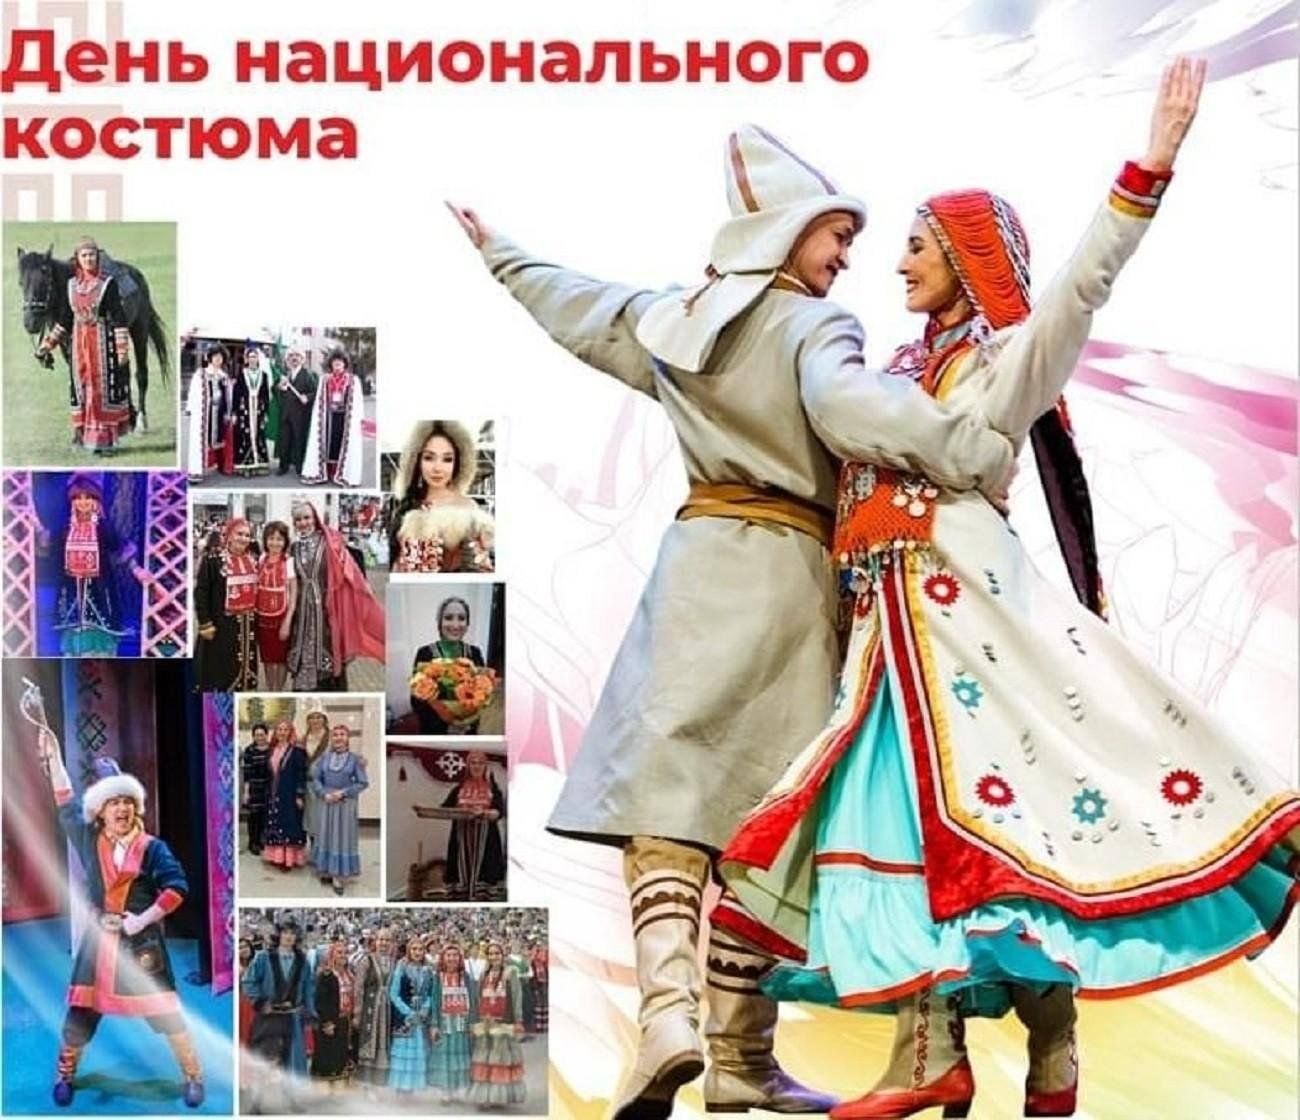 11 Сентября день национального костюма в Республике Башкортостан